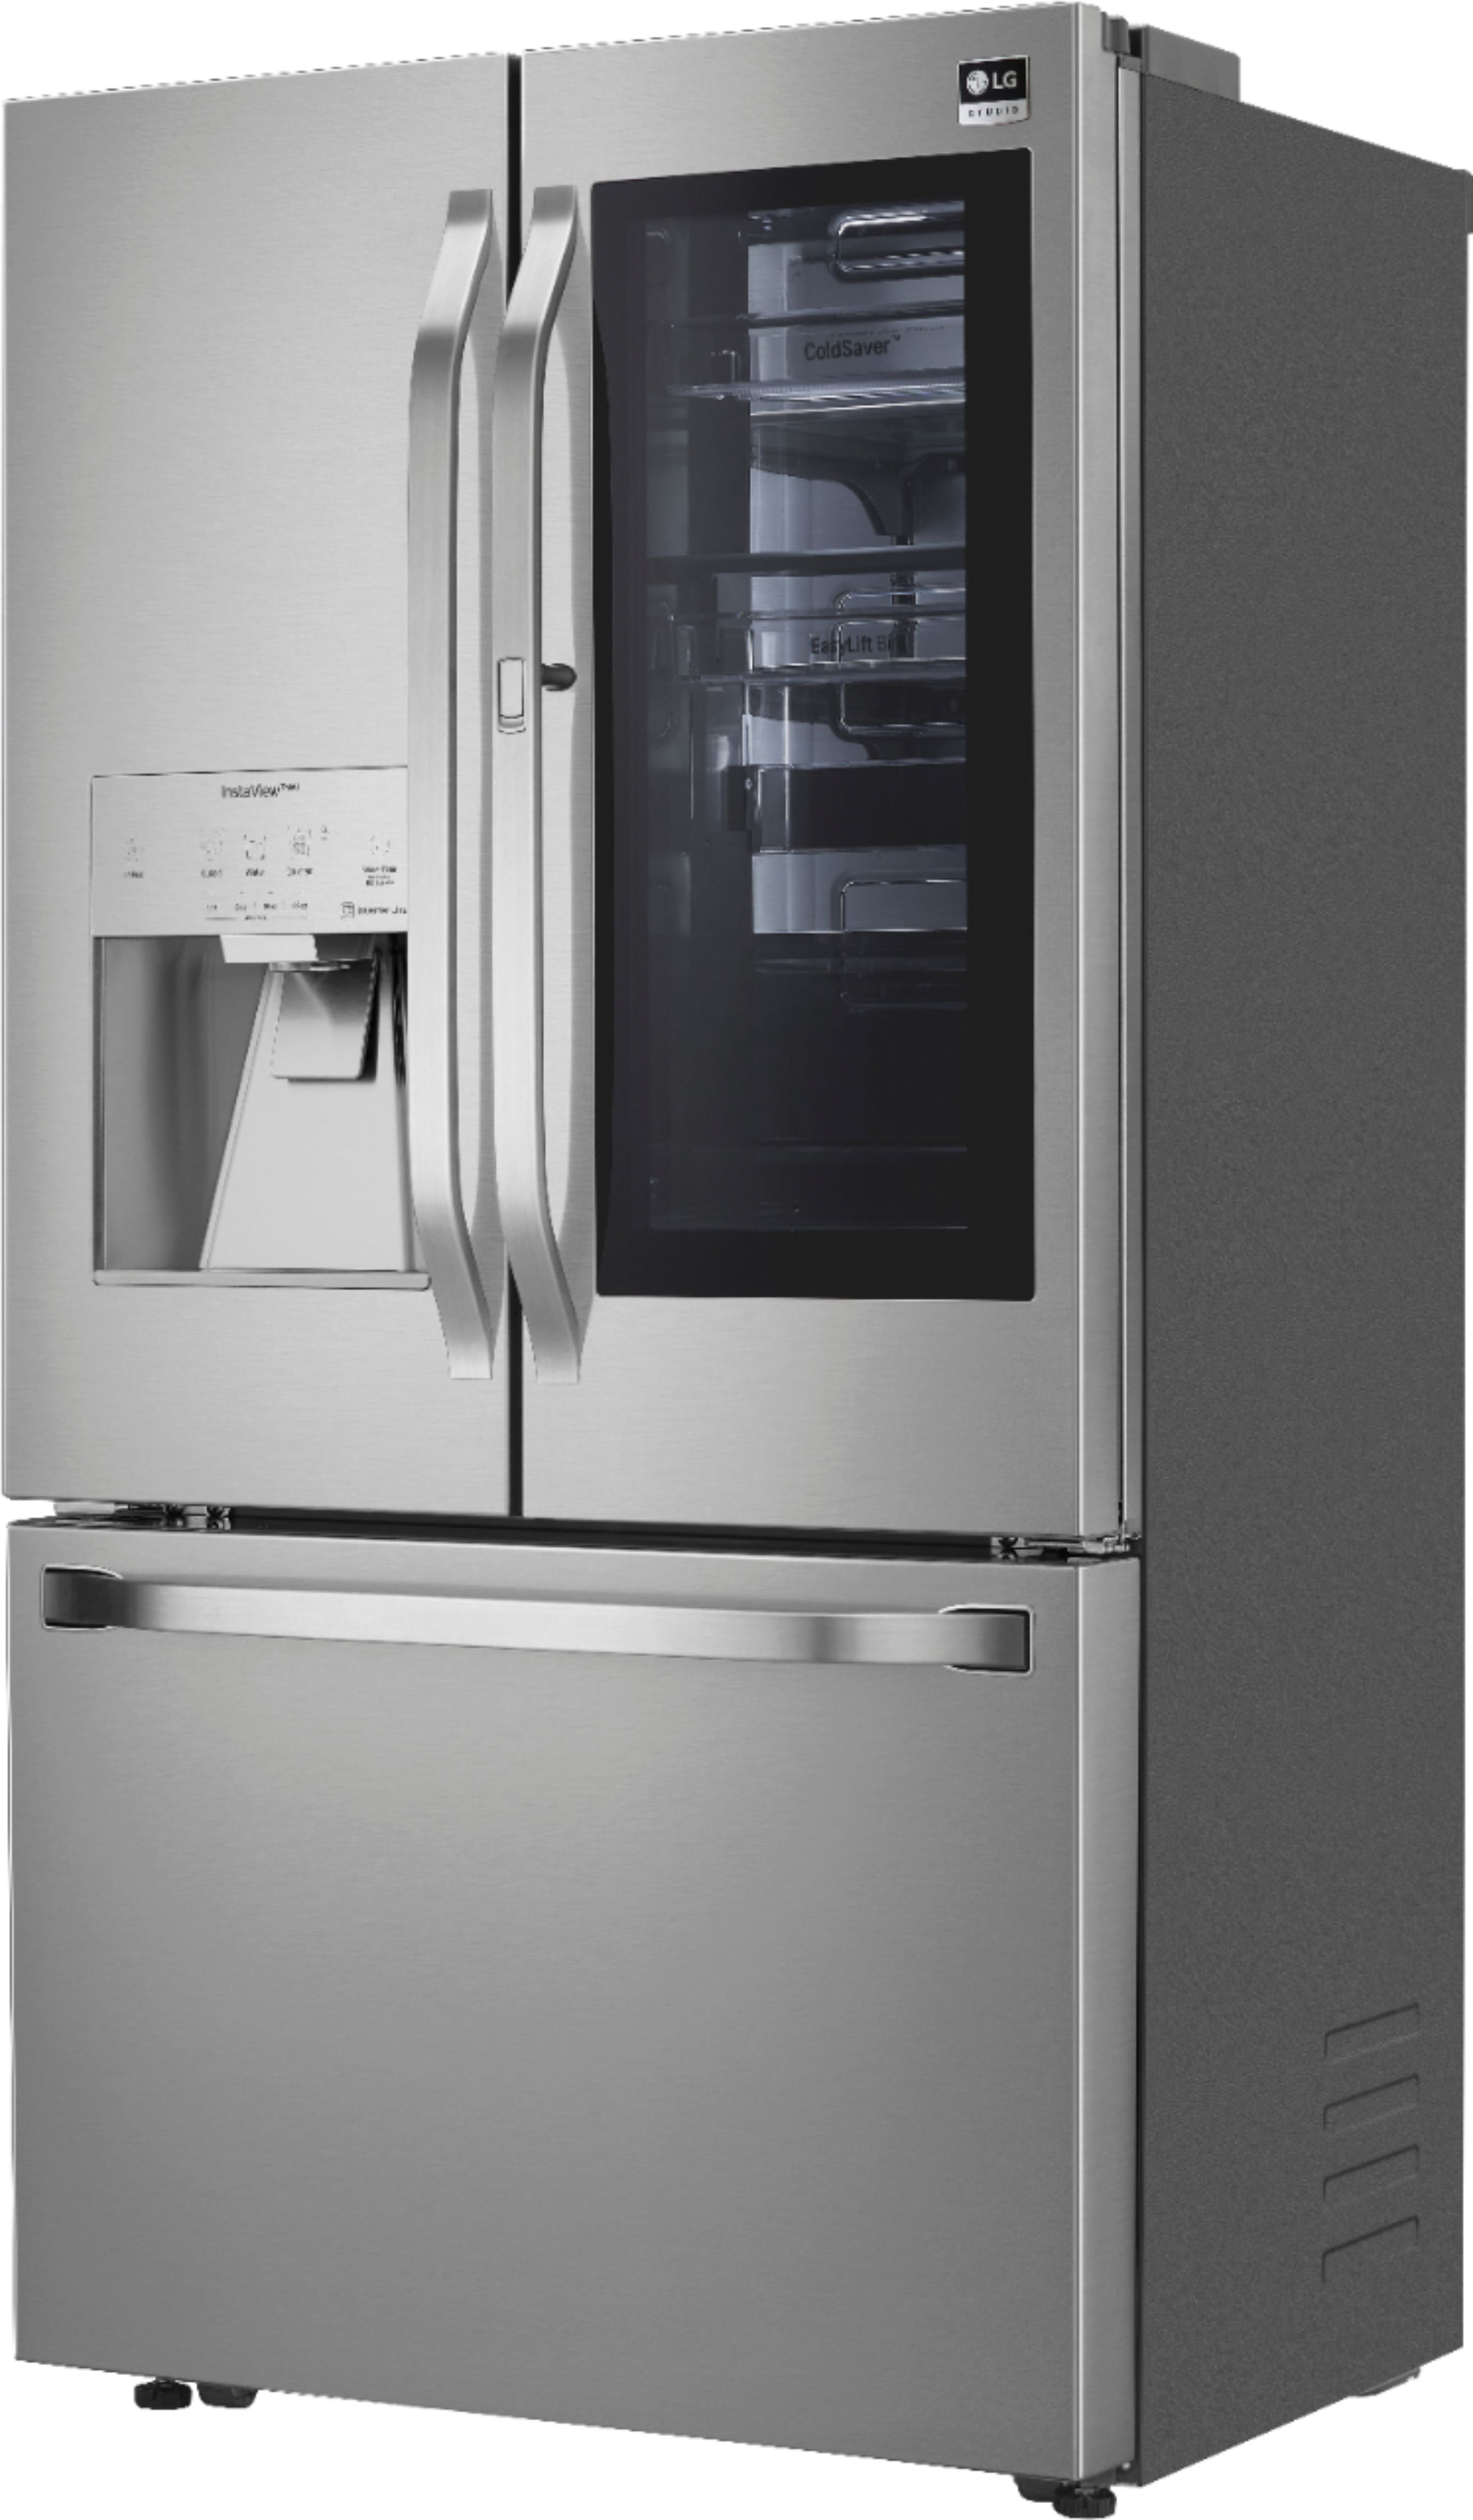 SRFVC2416S by LG - LG STUDIO 24 cu. ft. Smart InstaView® Door-in-Door®  Large Capacity Counter-Depth Refrigerator with Craft Ice™ Maker